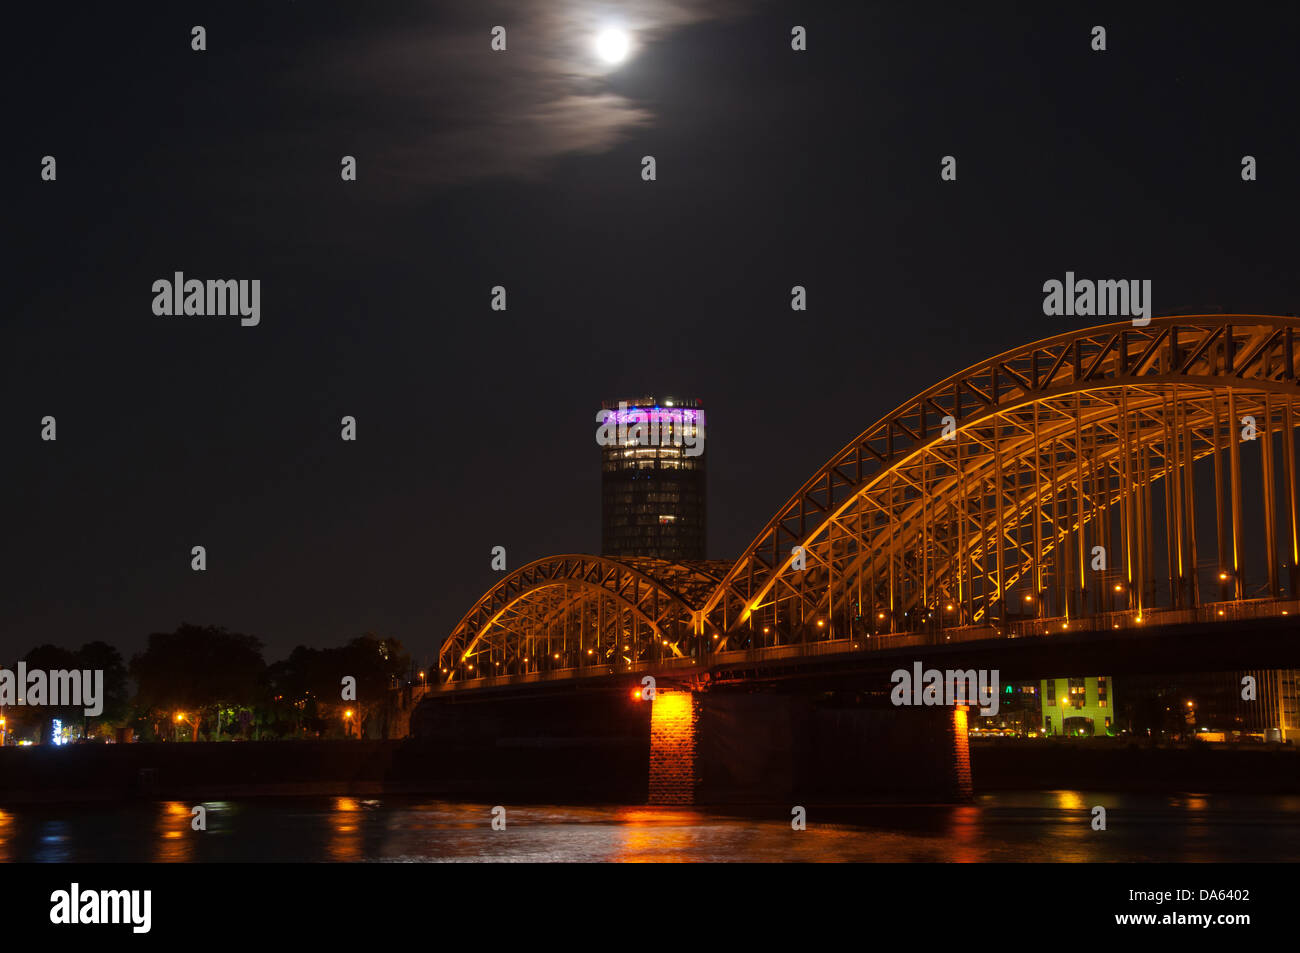 Hohenzollernbrücke, Rhine, Cologne, Rhineland, North Rhine-Westphalia, Germany, Europe, night, bridge, Stock Photo